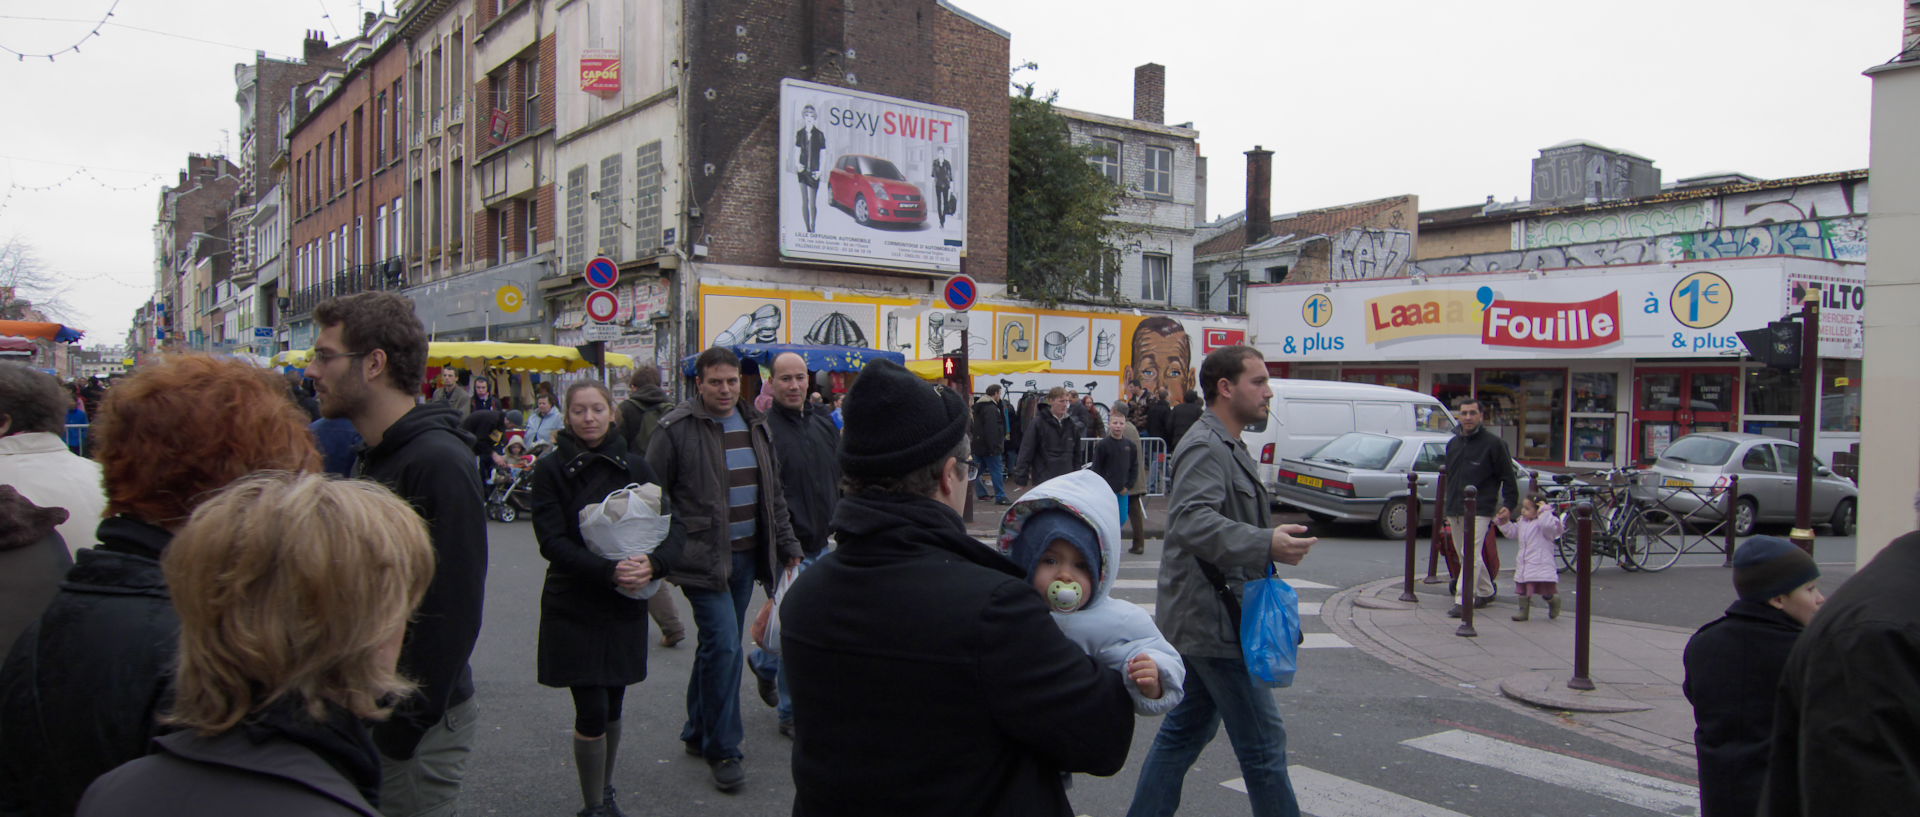 Dimanche 9 novembre 2008 (2), rue Gambetta, à Wazemmes, Lille.